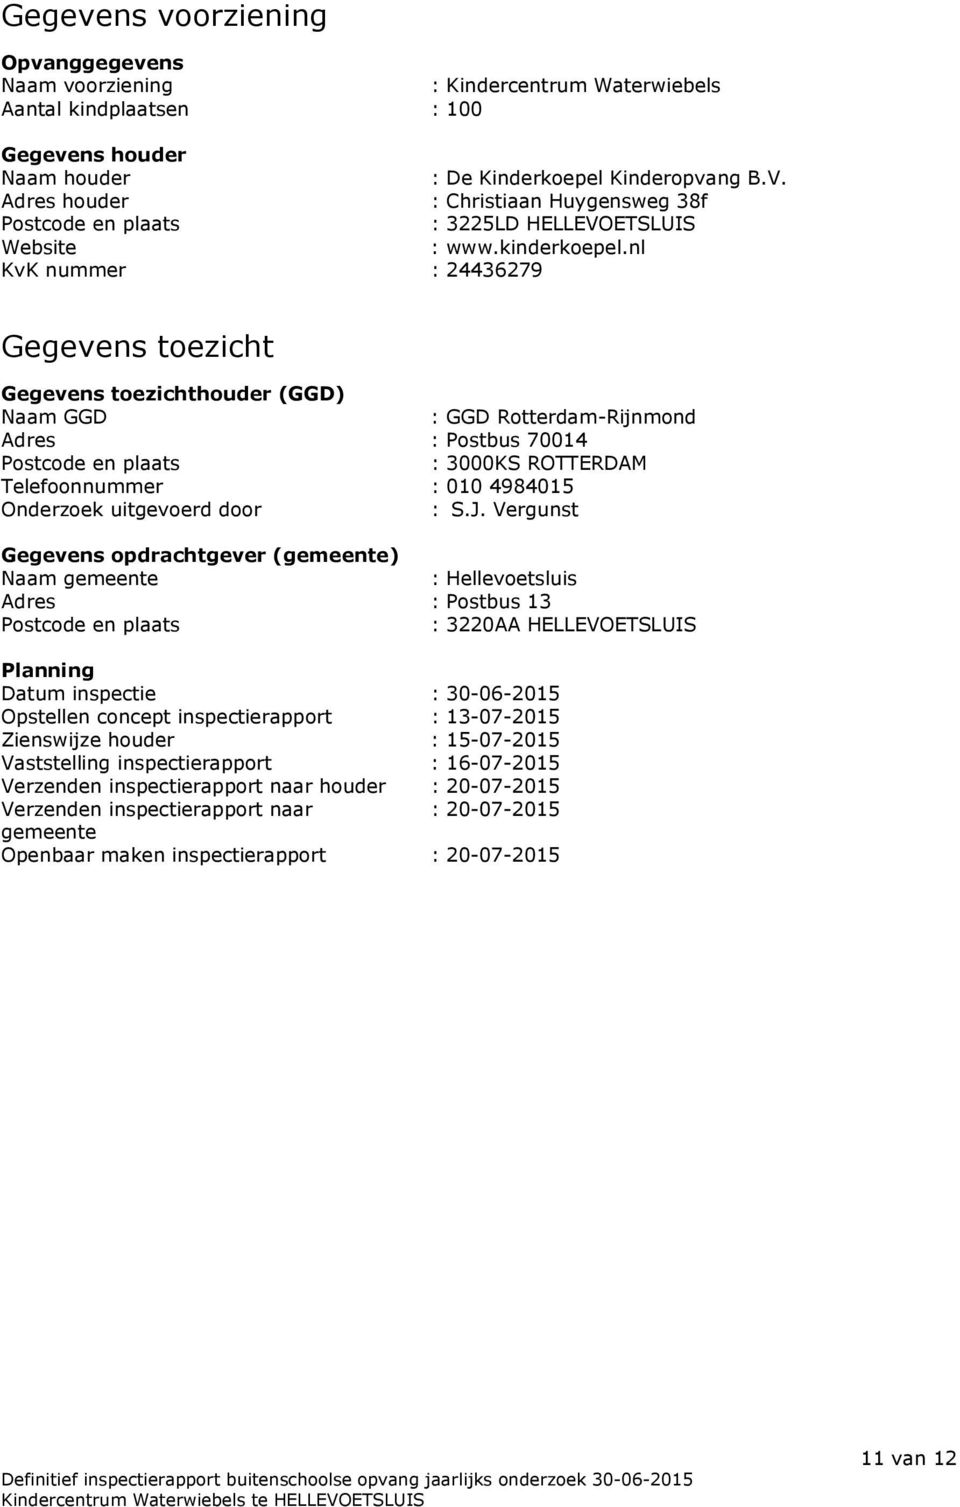 nl KvK nummer : 24436279 Gegevens toezicht Gegevens toezichthouder (GGD) Naam GGD : GGD Rotterdam-Rijnmond Adres : Postbus 70014 Postcode en plaats : 3000KS ROTTERDAM Telefoonnummer : 010 4984015